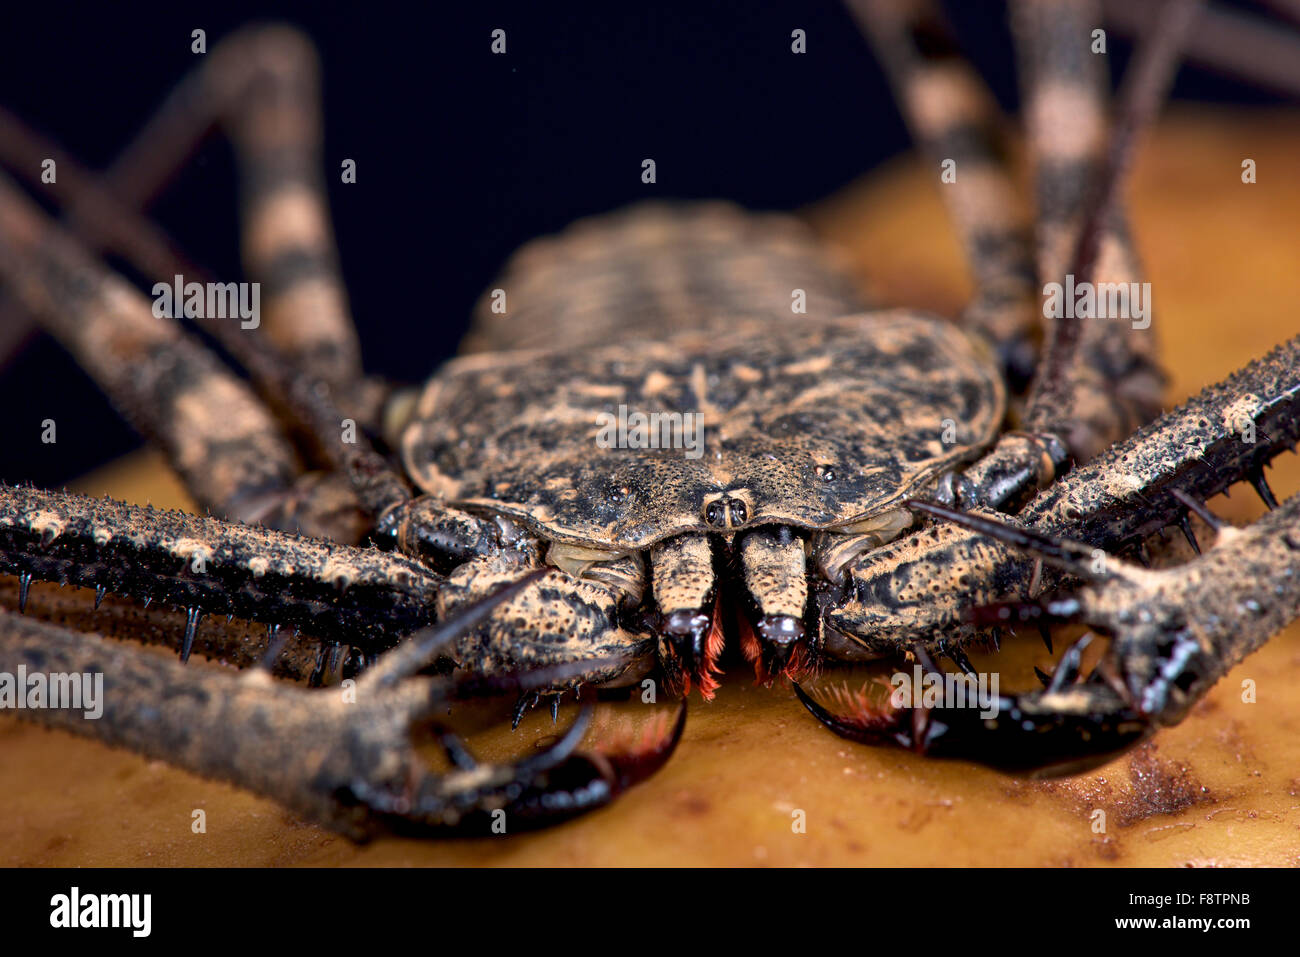 Whip scorpion (Damon variegata) Stock Photo